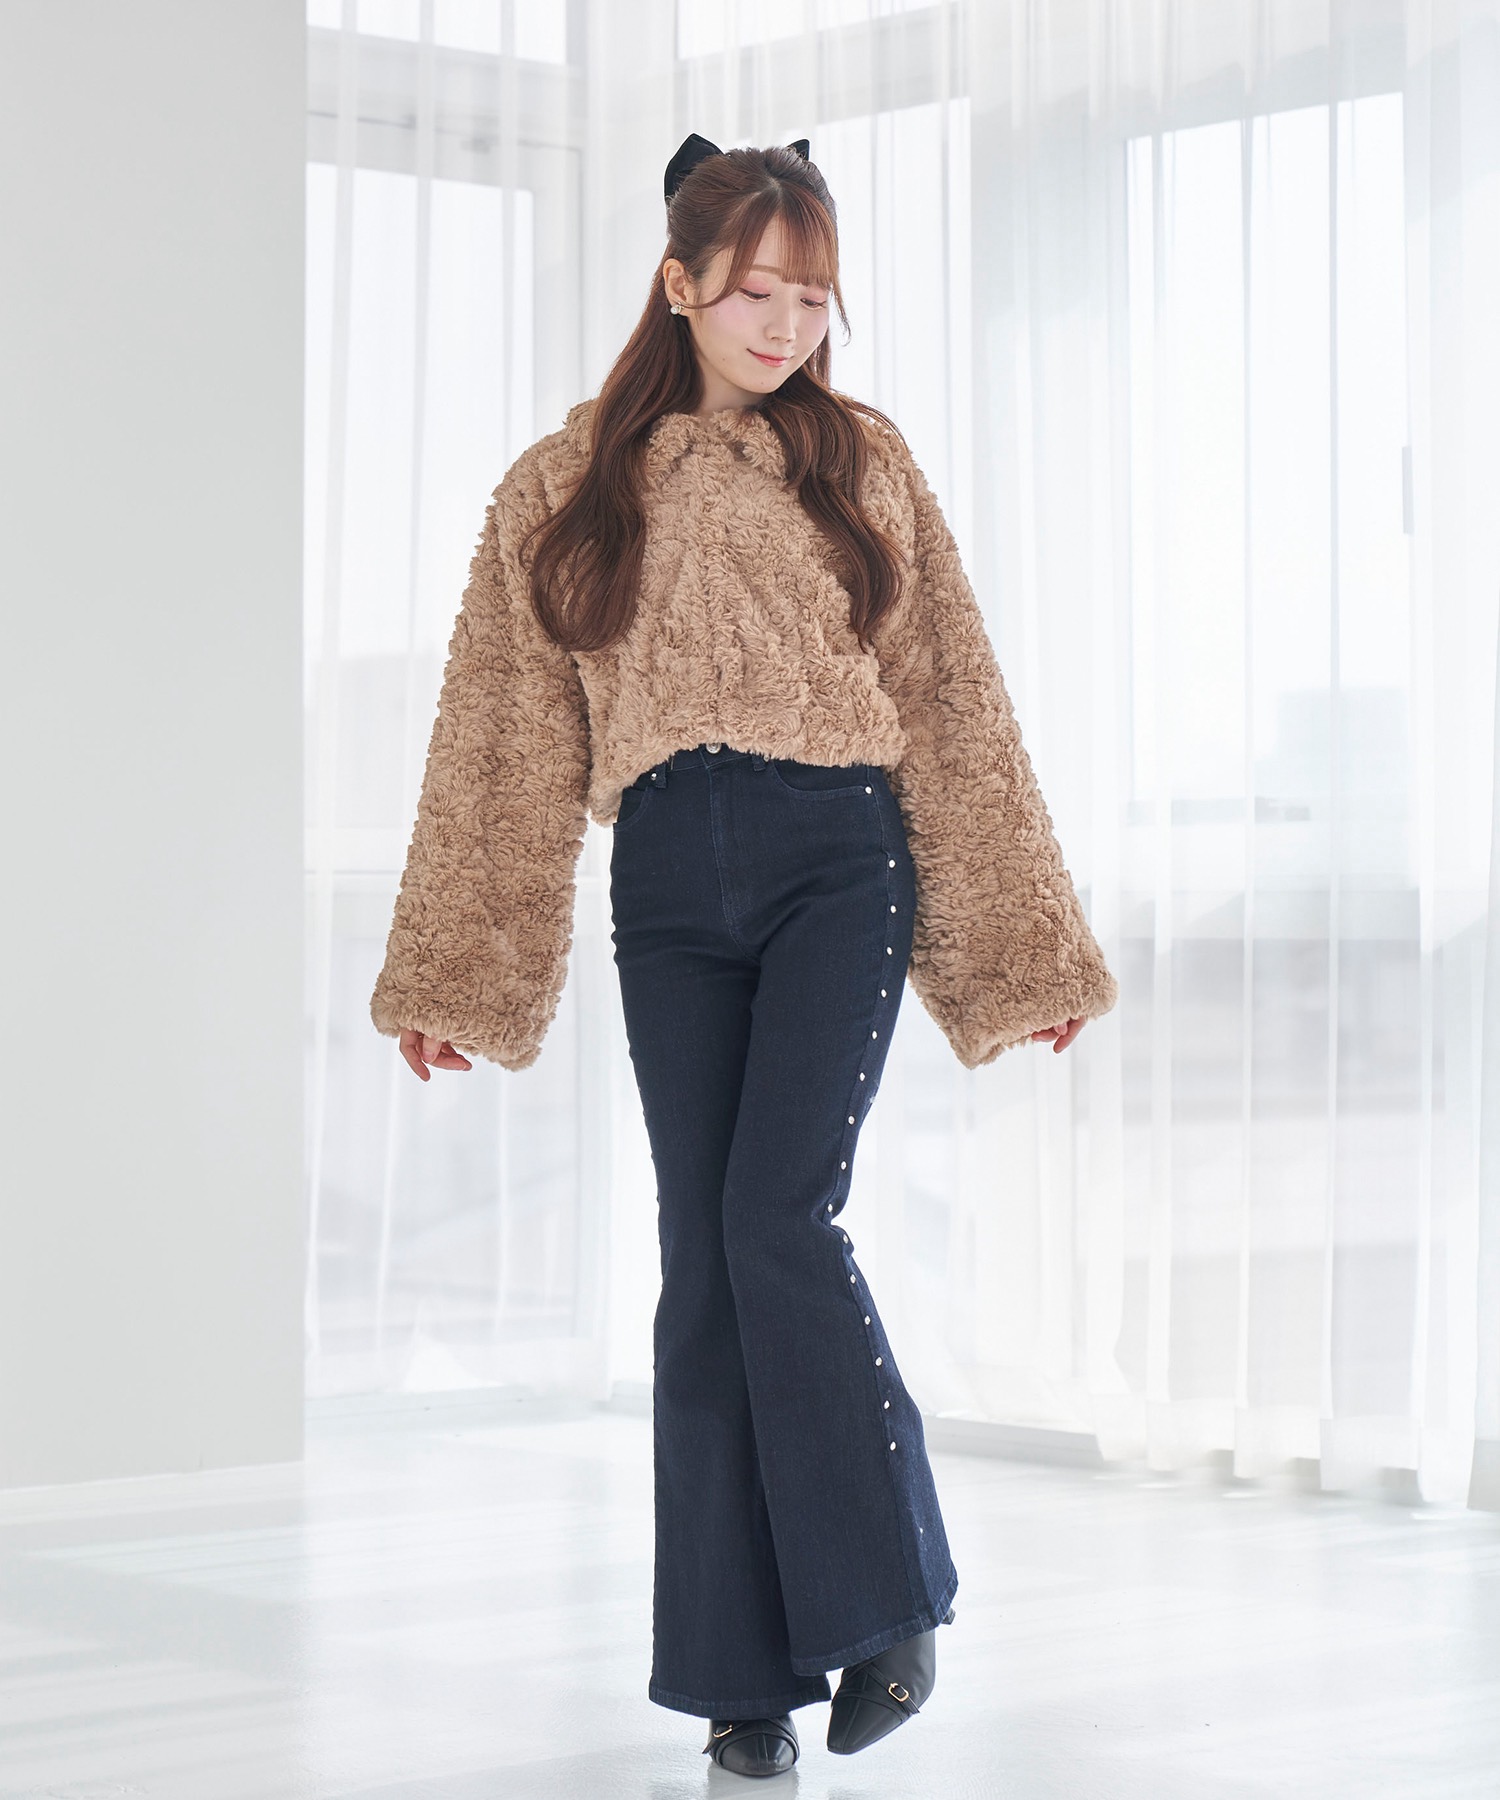 fullfy faux fur short coat【brown】 – BUNNY APARTMENT